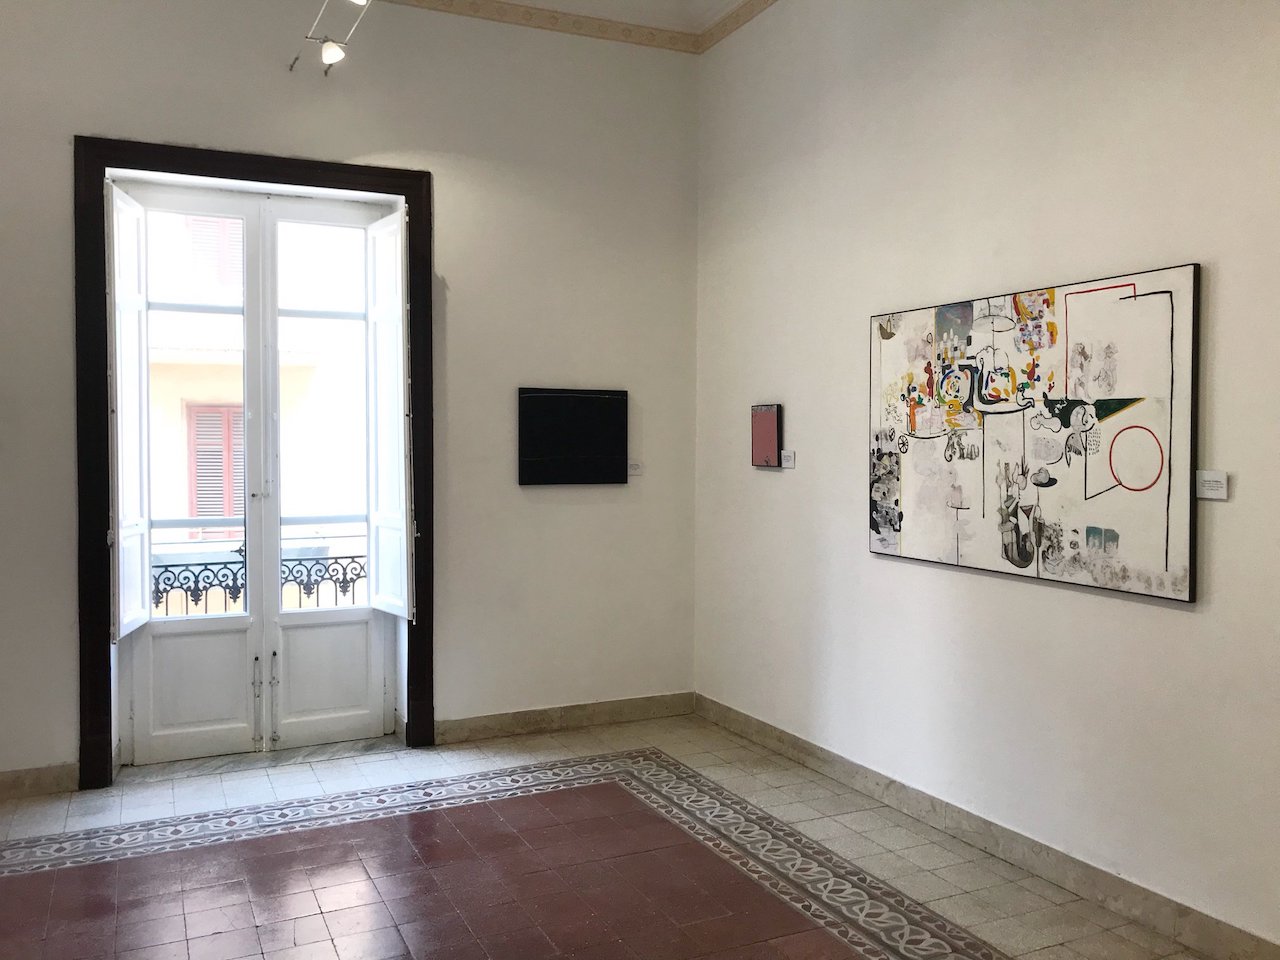 Galleria Lombardi e La Nica a Palermo